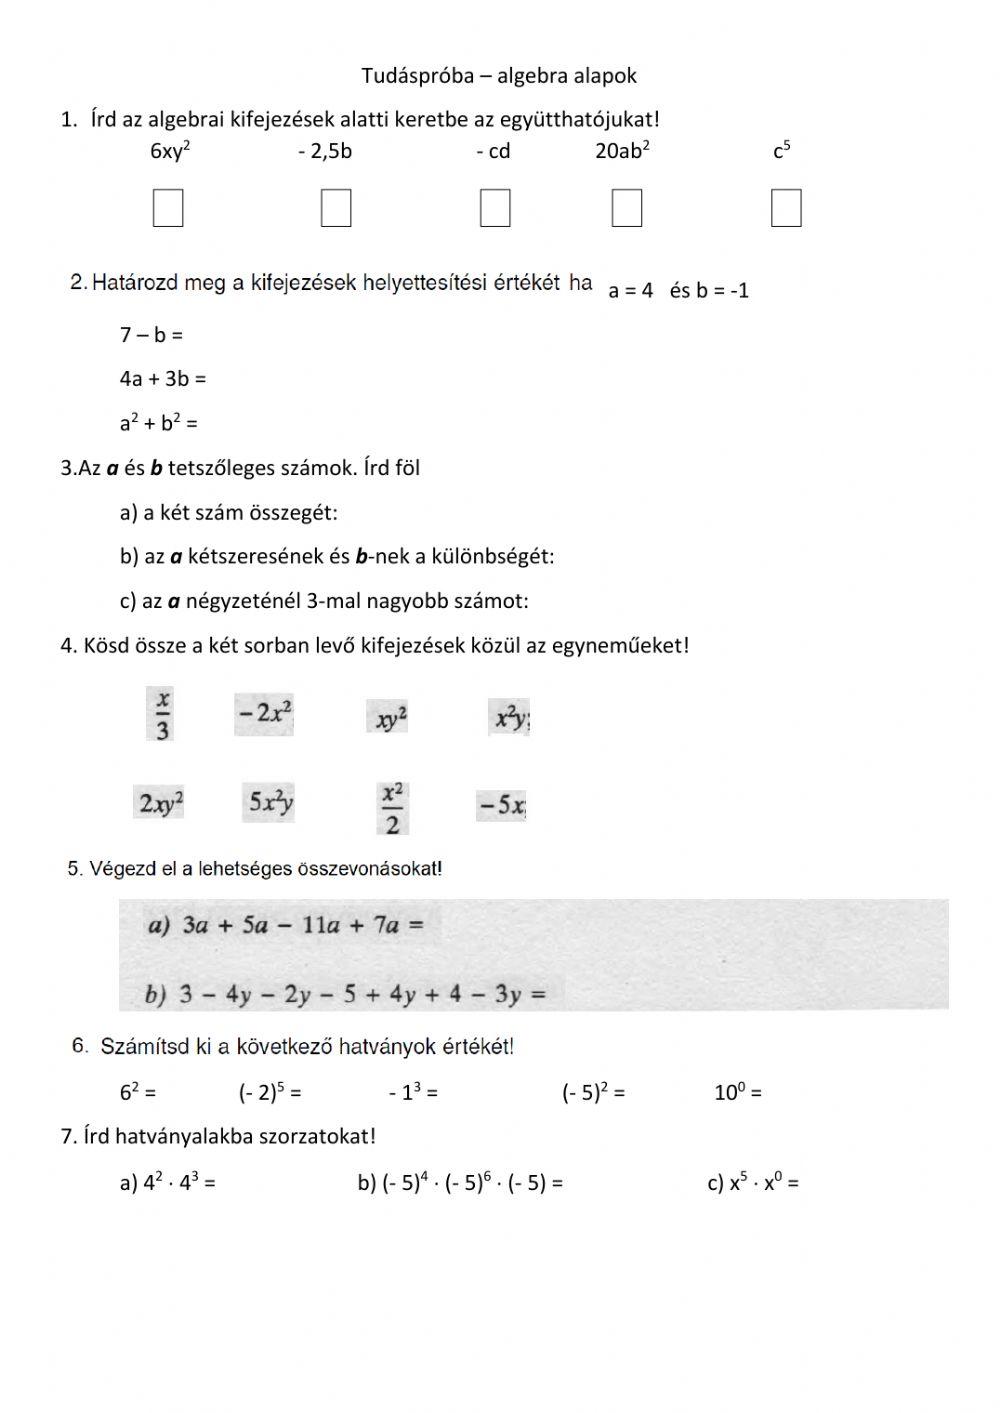 Tudéspróba - algebra alapok-A